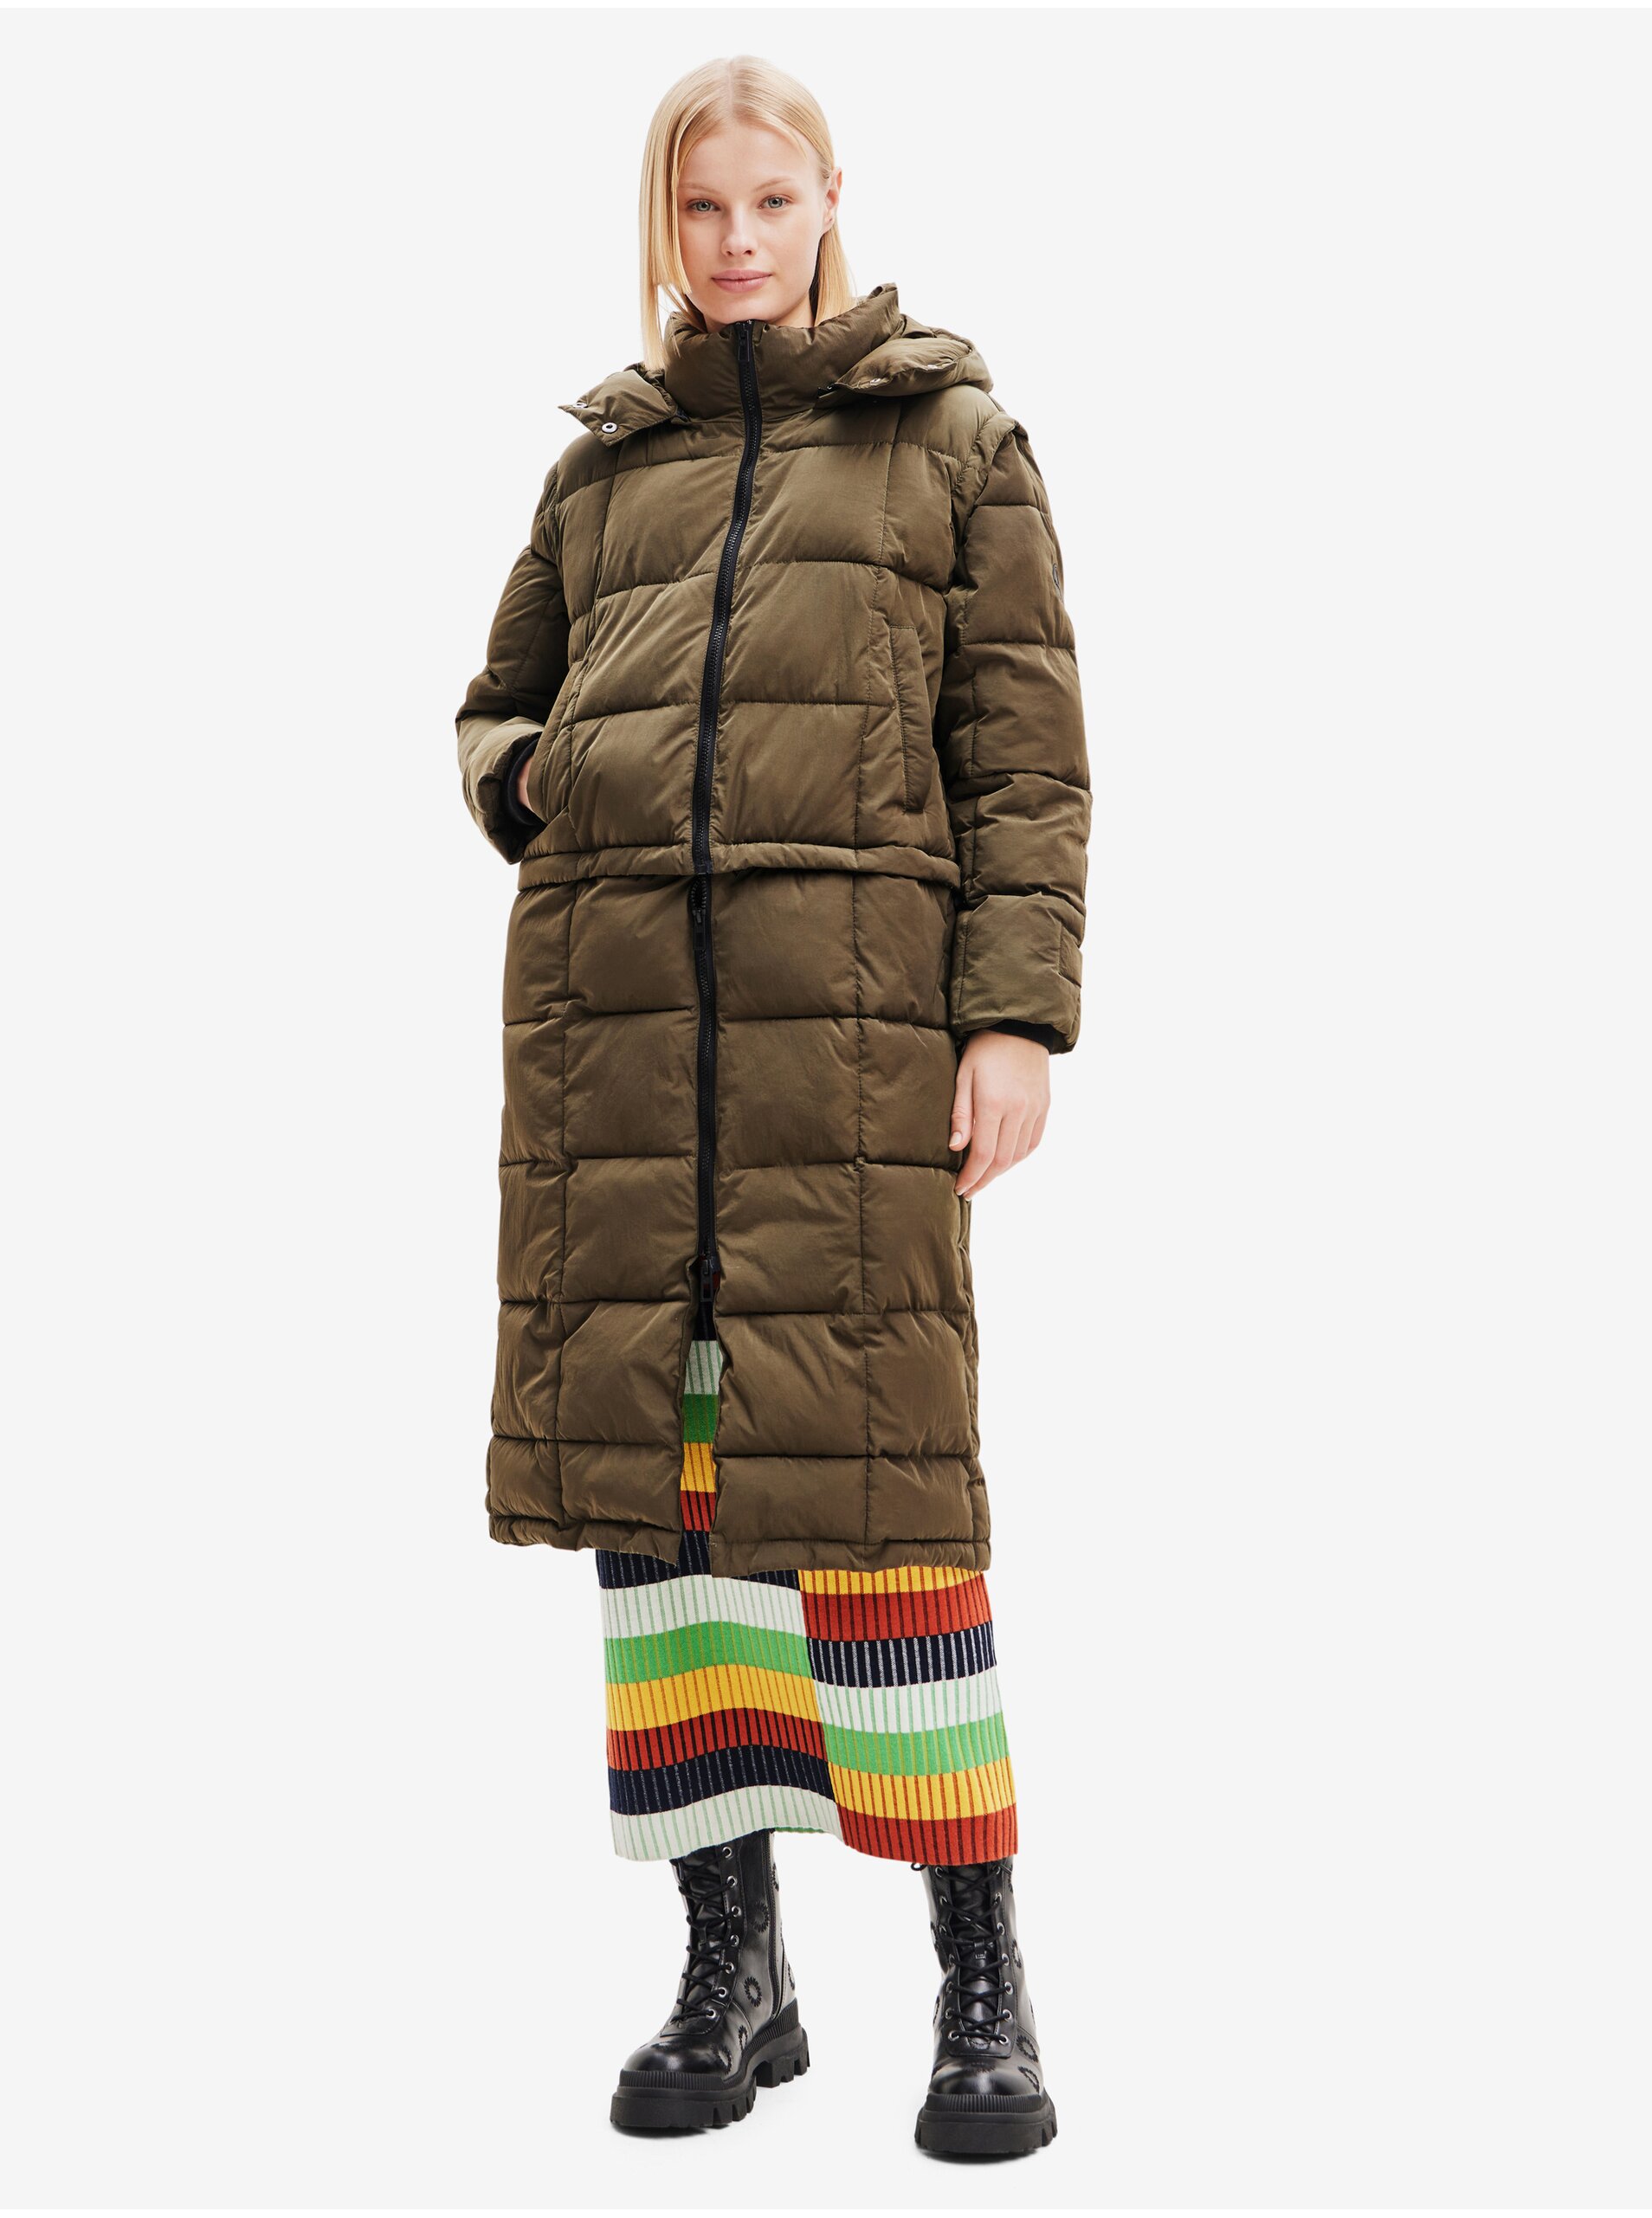 Lacno Kaki dámsky zimný prešívaný kabát/vesta Desigual Tetris